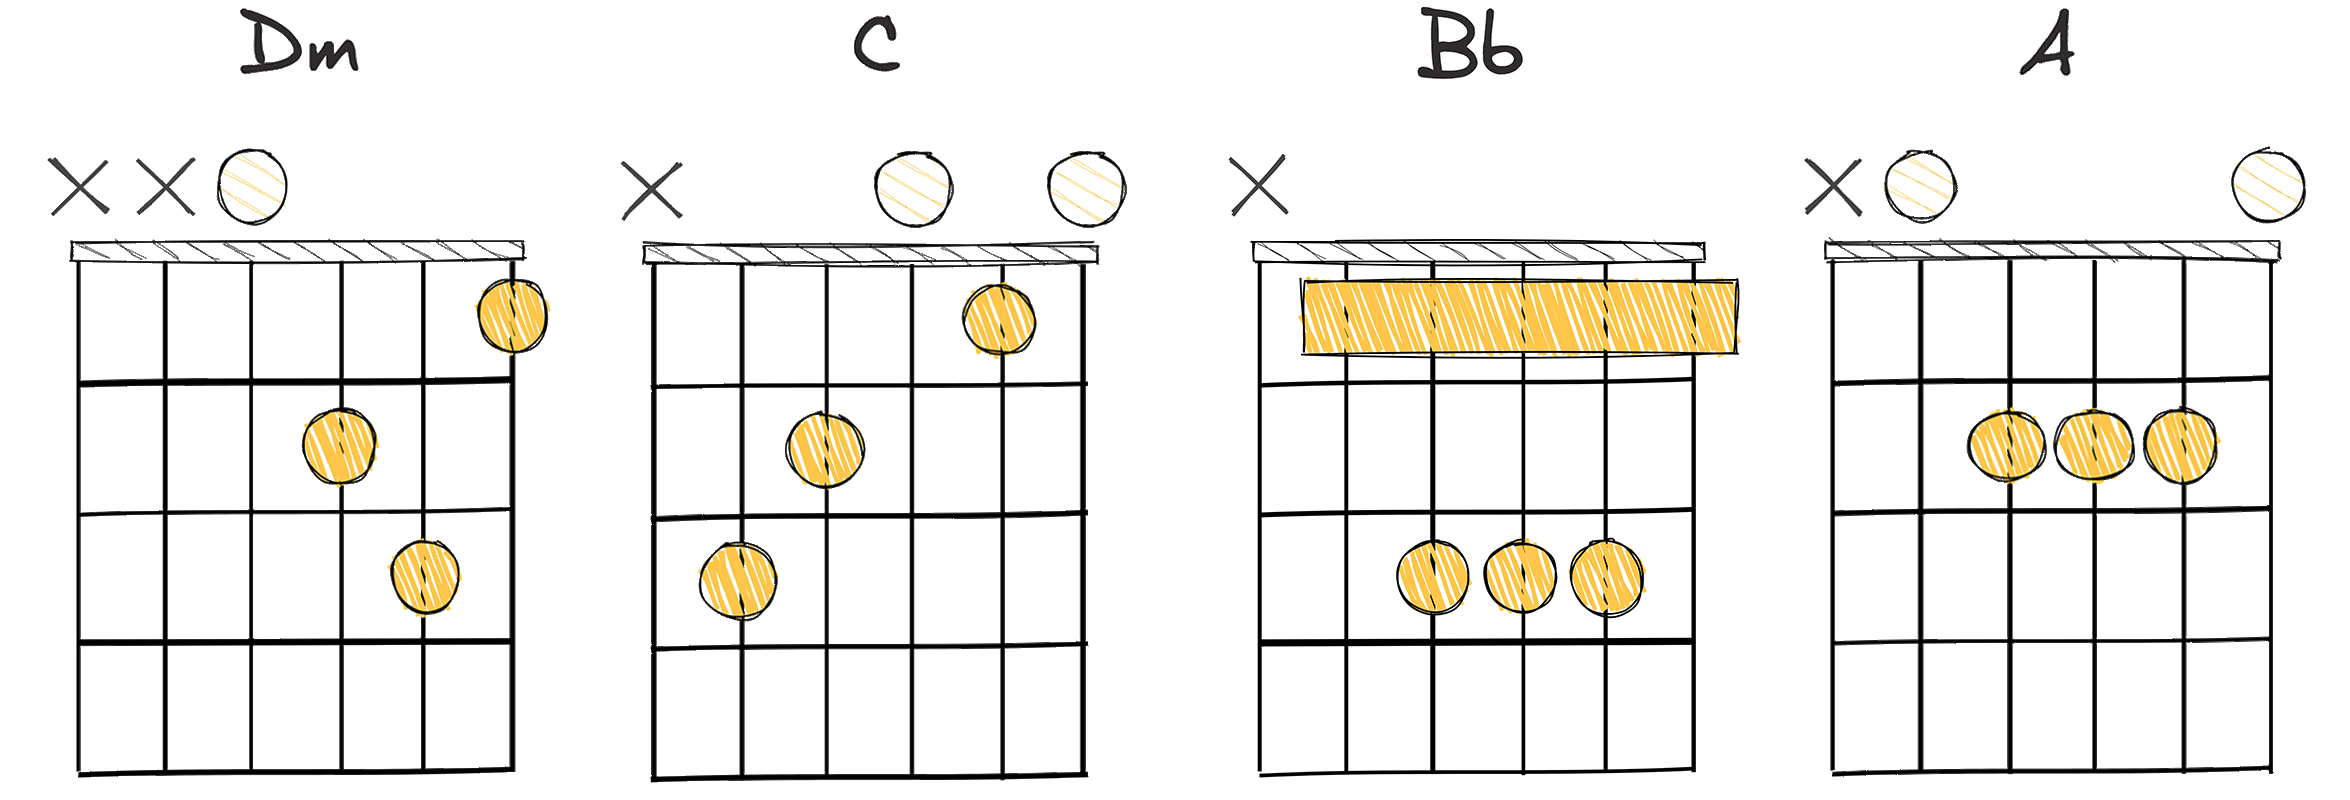 i-VII-VI-V (1-7-6-5) chords diagram